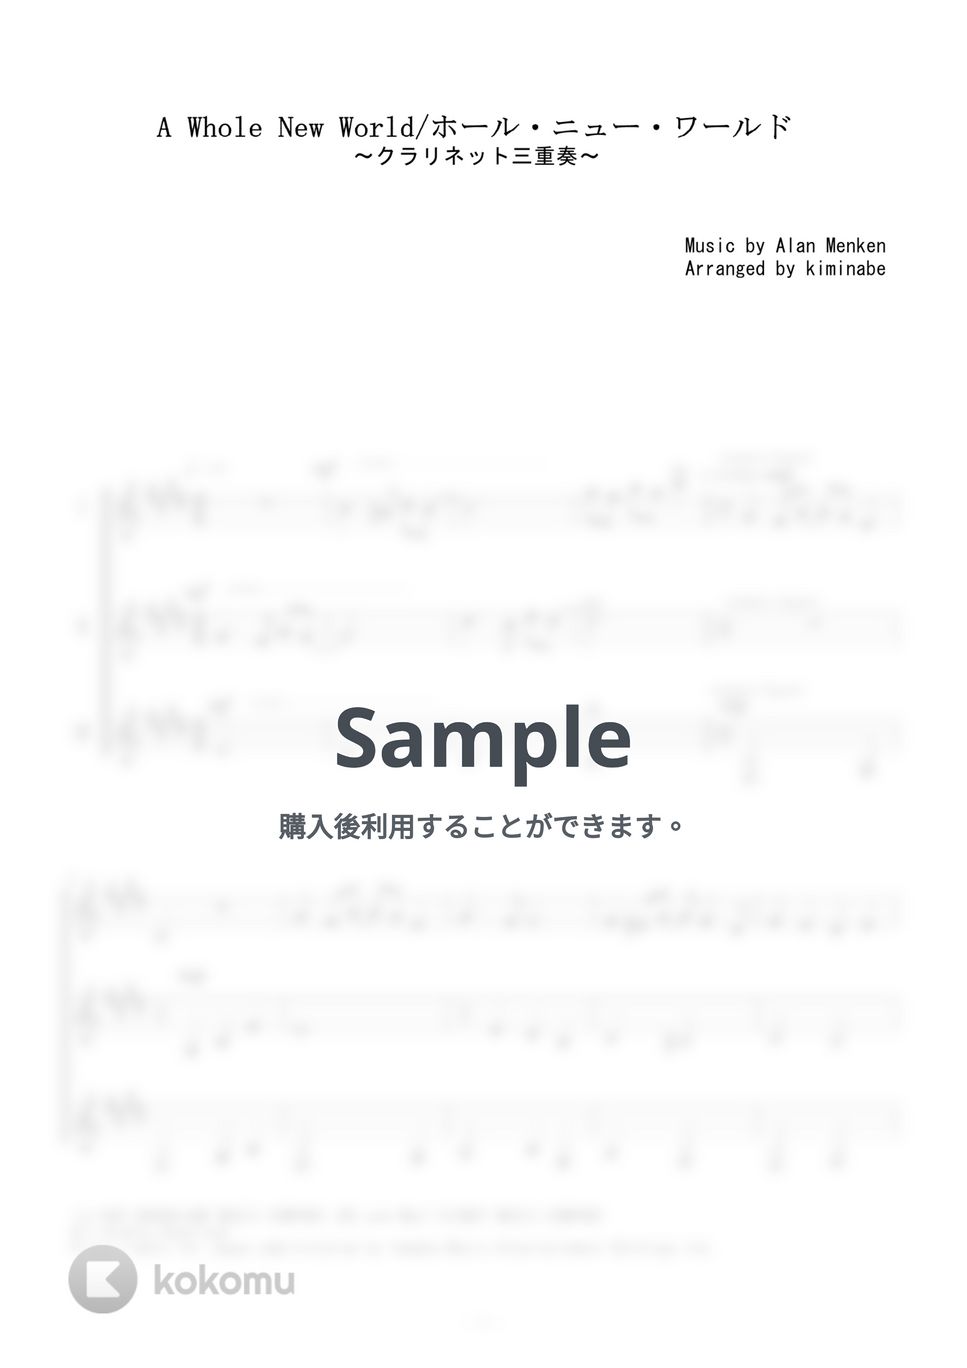 アラン・メンケン - ホール・ニュー・ワールド (クラリネット三重奏) by kiminabe